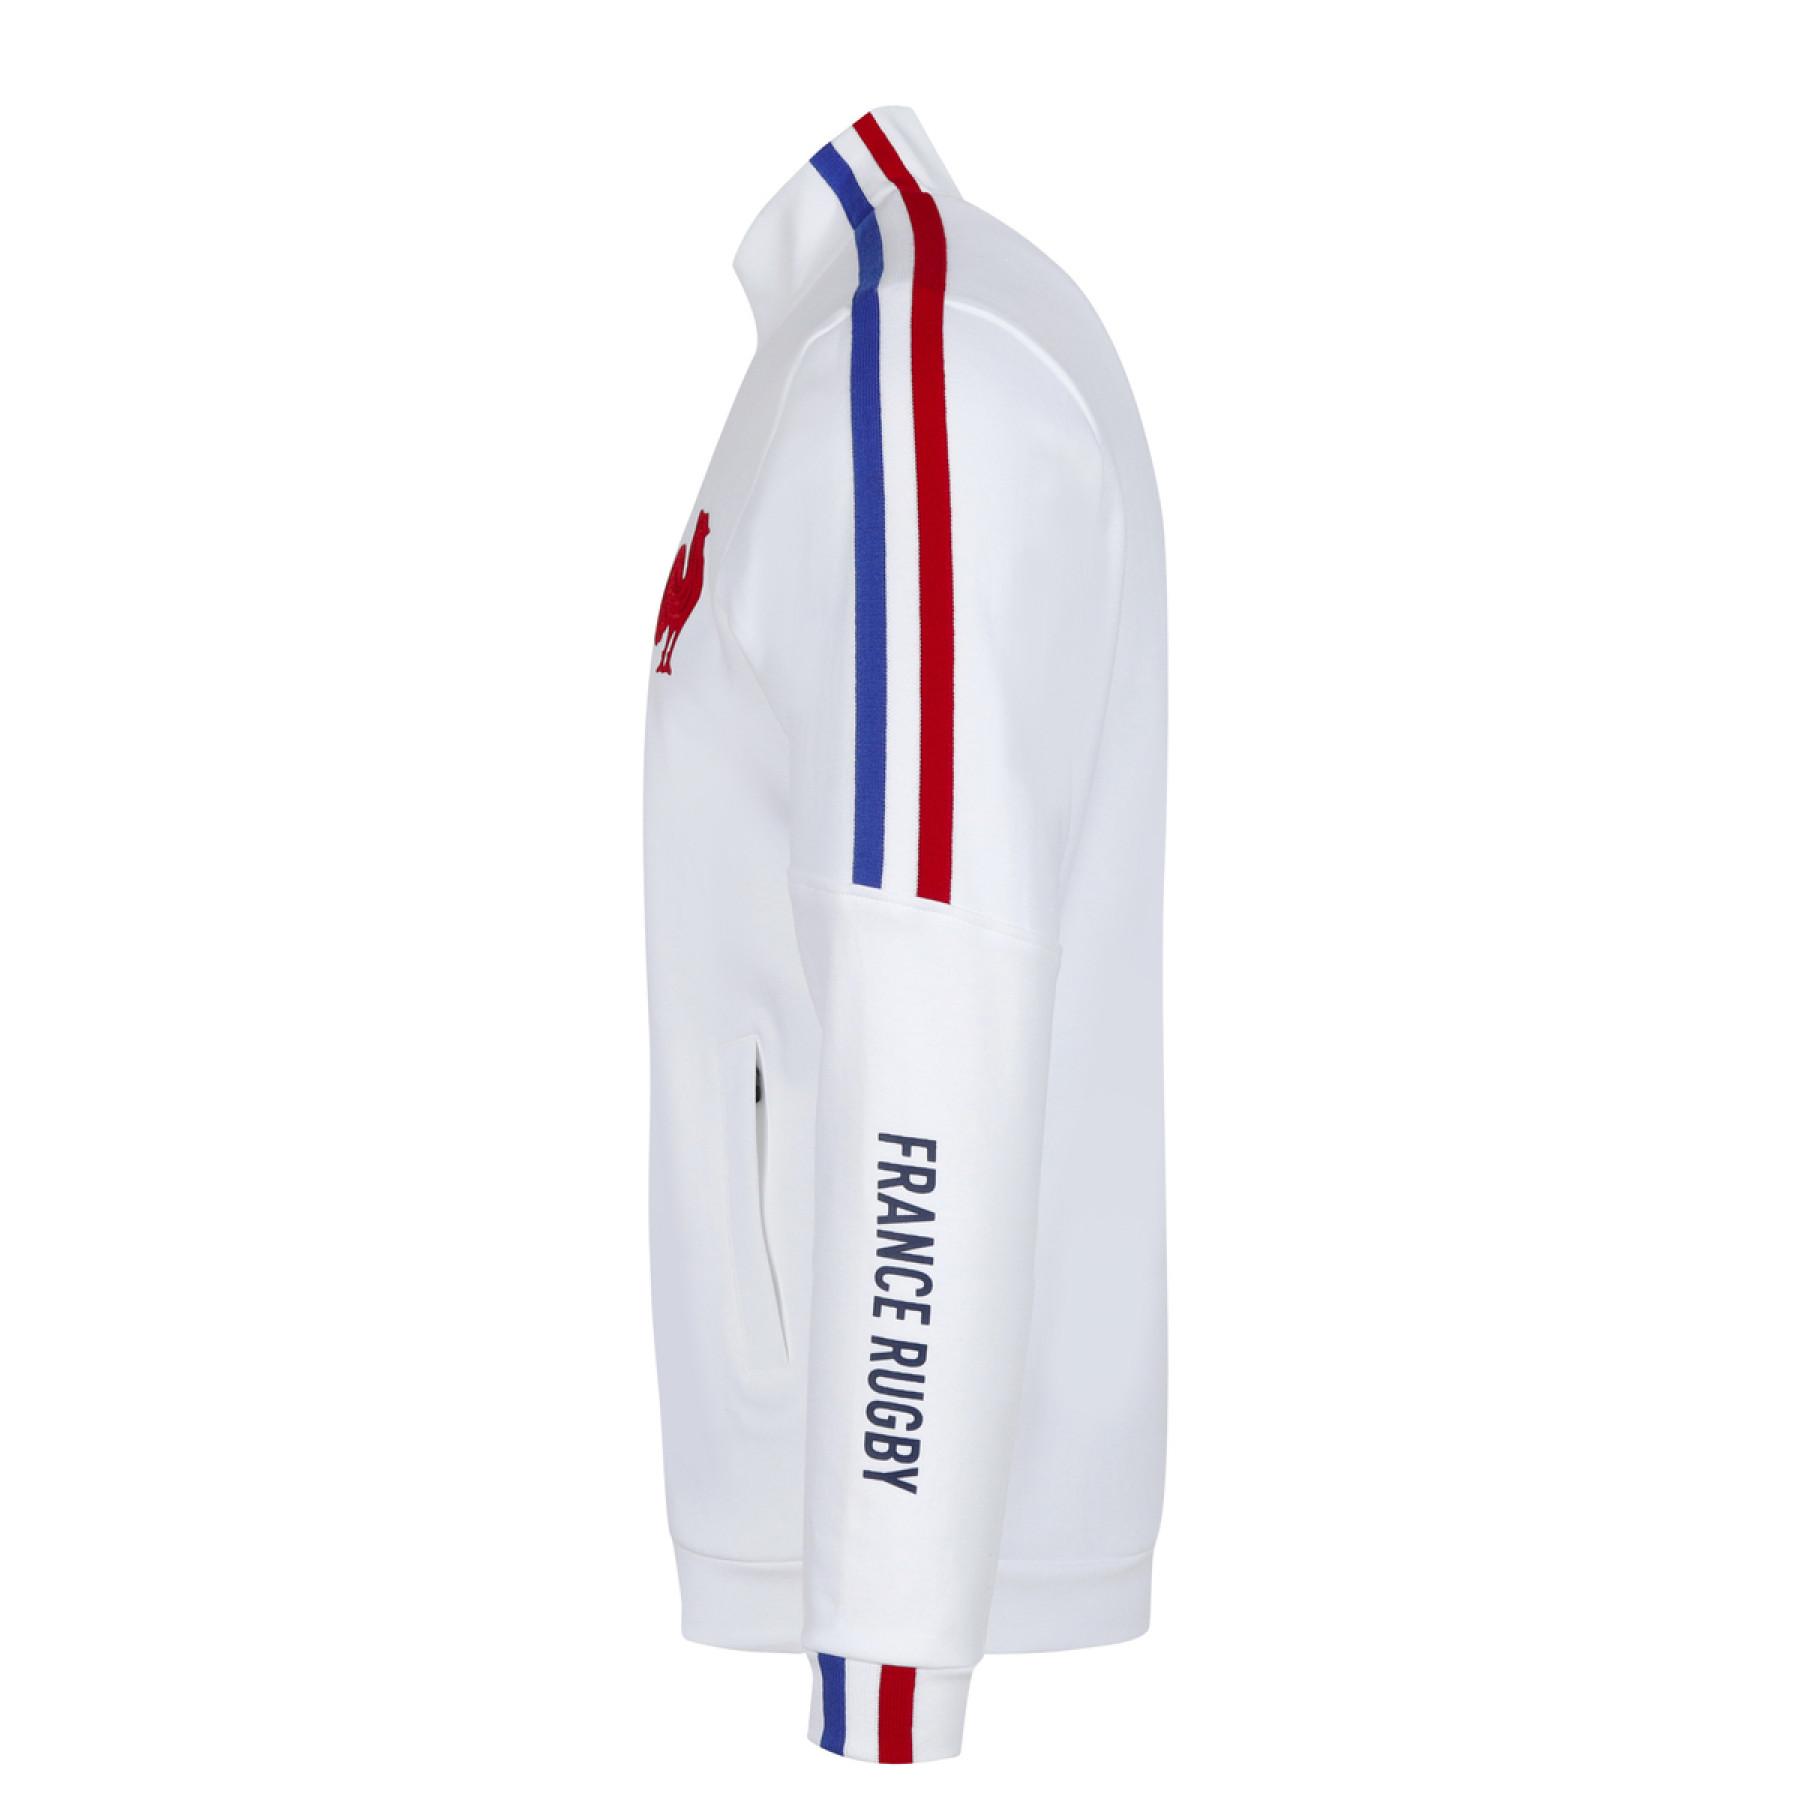 Sweatshirt zip p p XV de France